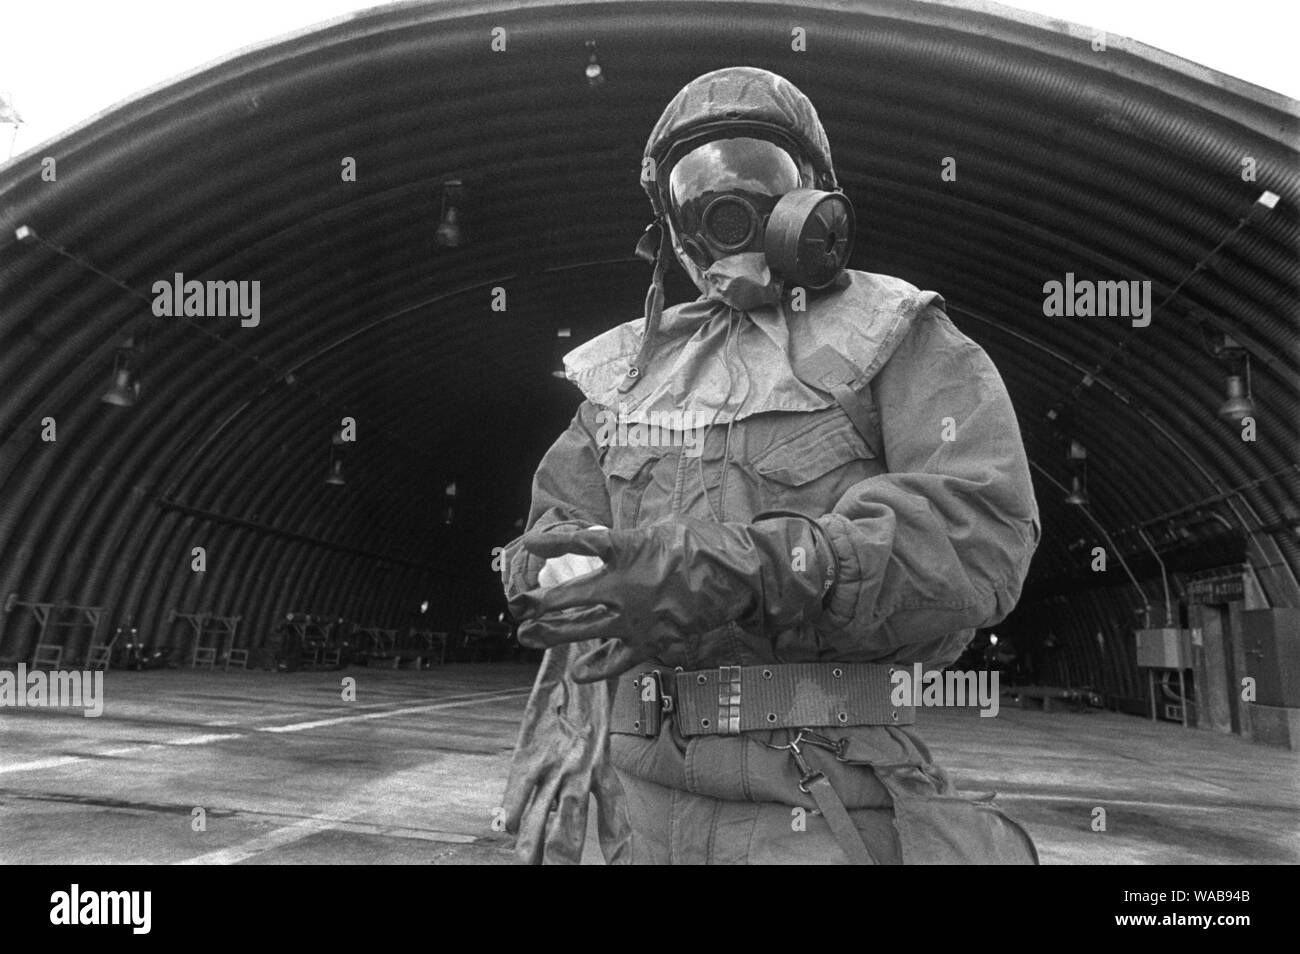 Spangdahlem, U.S. Air Force air base (Allemagne de l'Ouest)), siège ot 52d Tactical Fighter Wing. Les membres du personnel technique au sol au cours d'un exercice NBC (Juin 1985) Banque D'Images